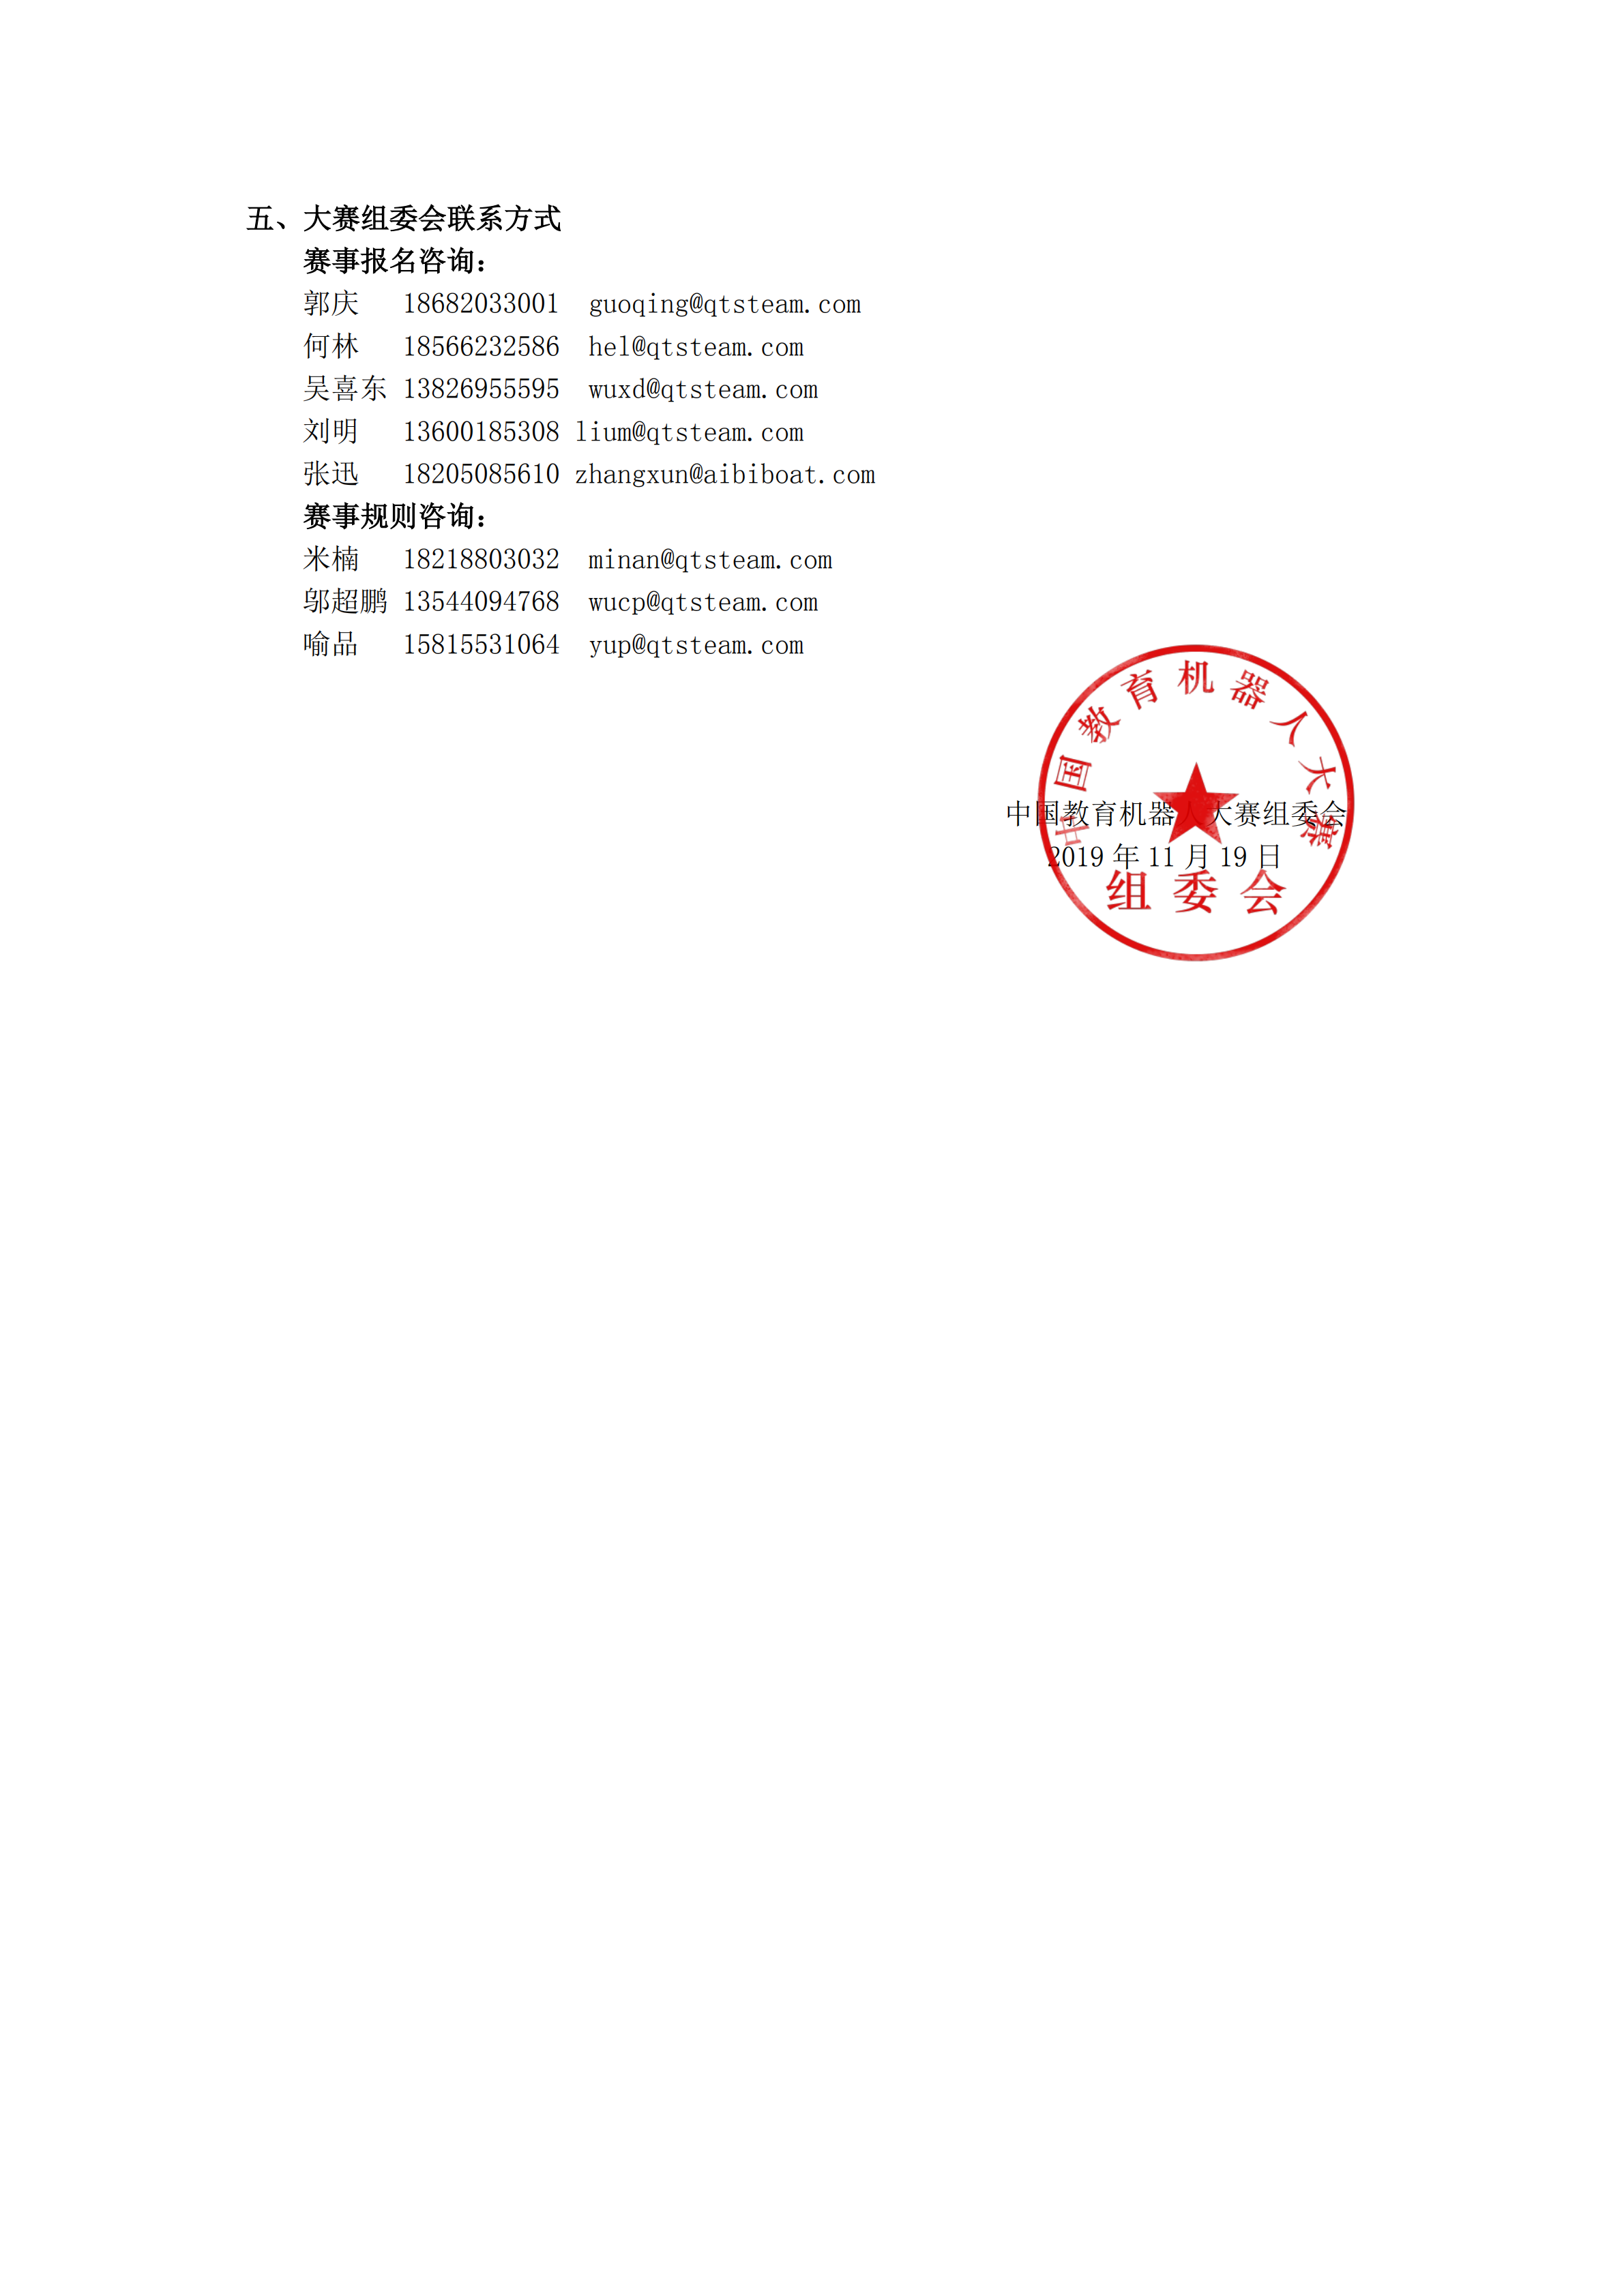 2019第九届中国教育机器人大赛江苏赛区通知（1.0版）_02.png